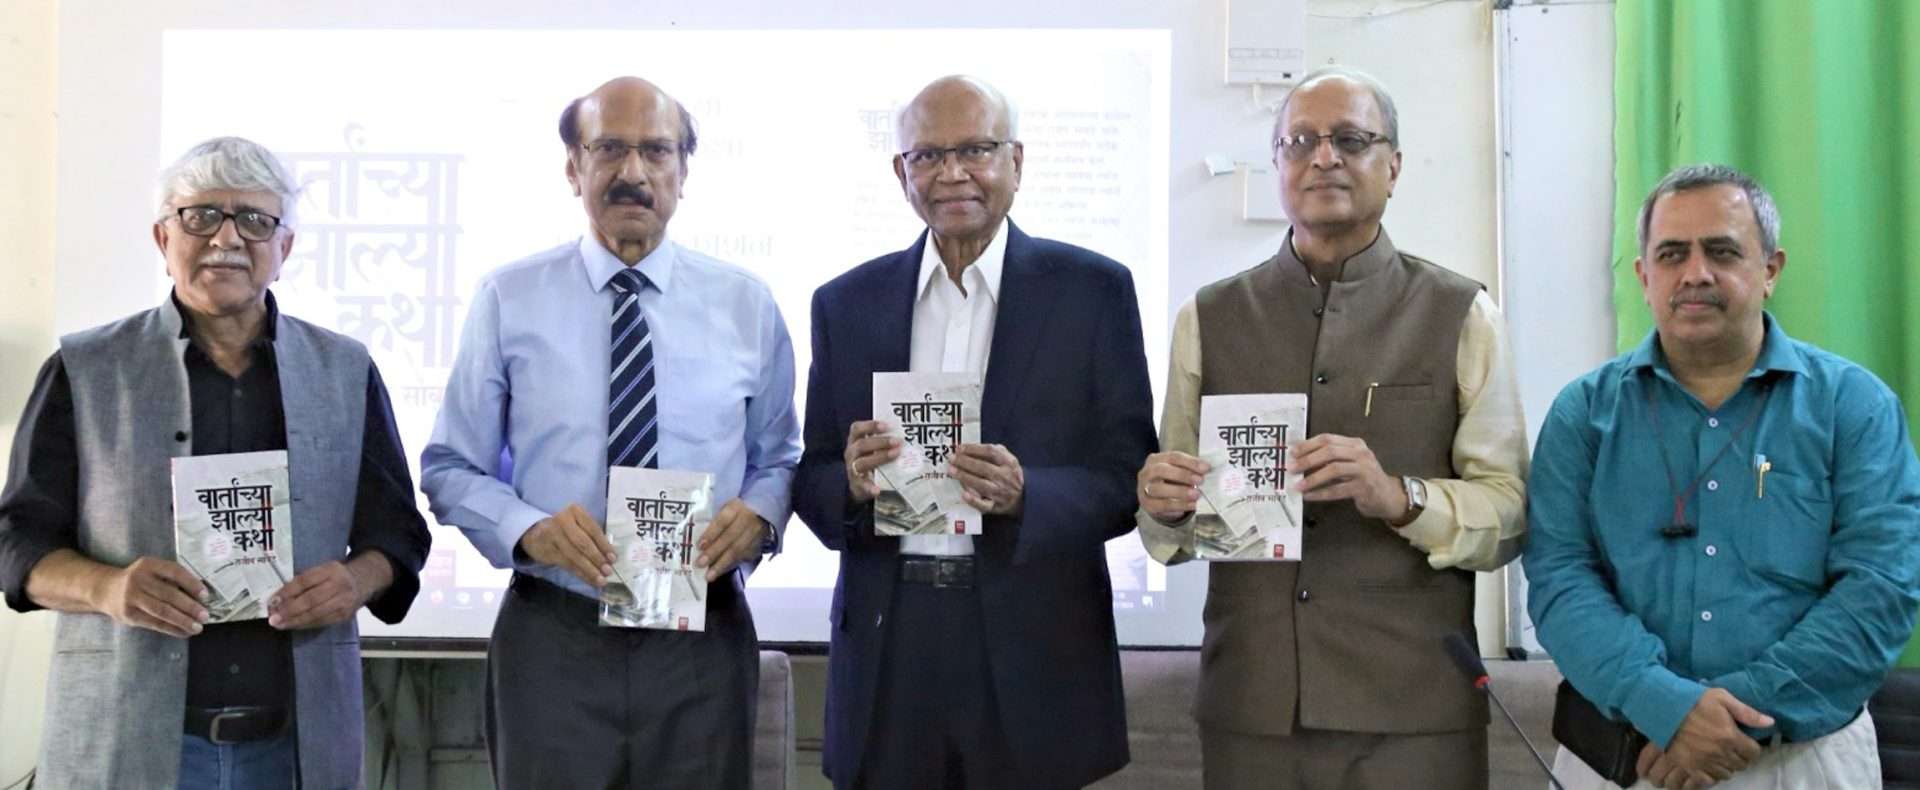 पत्रकारांनी बातमीमागील कथा पुस्तकरूपात उतरवावी;डॉ. रघुनाथ माशेलकर